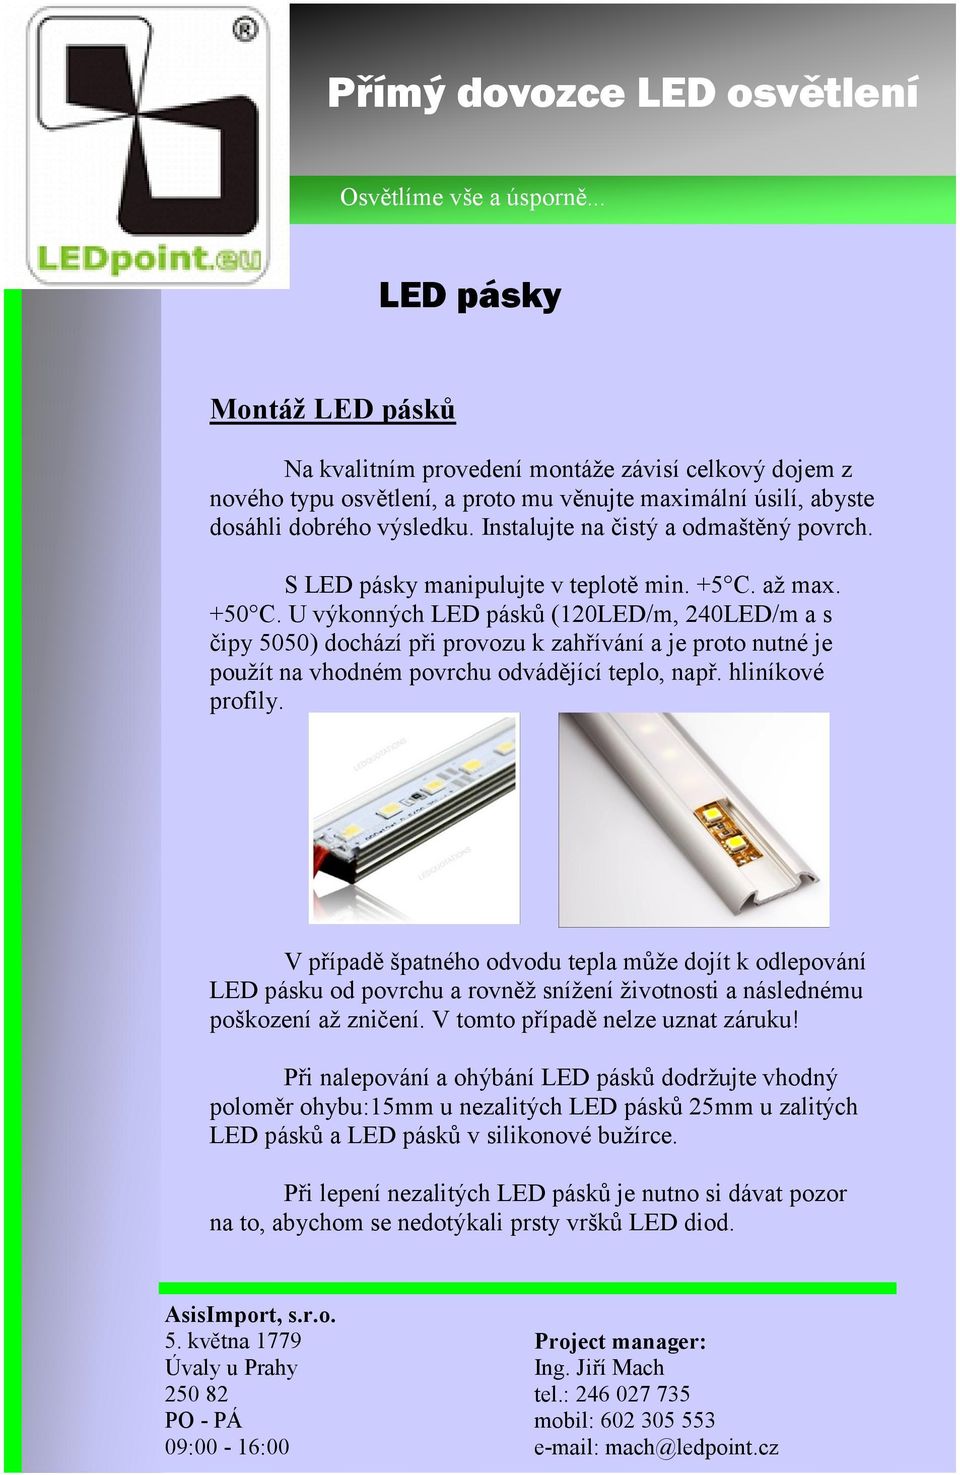 U výkonných LED pásků (120LED/m, 240LED/m a s čipy 5050) dochází při provozu k zahřívání a je proto nutné je použít na vhodném povrchu odvádějící teplo, např. hliníkové profily.